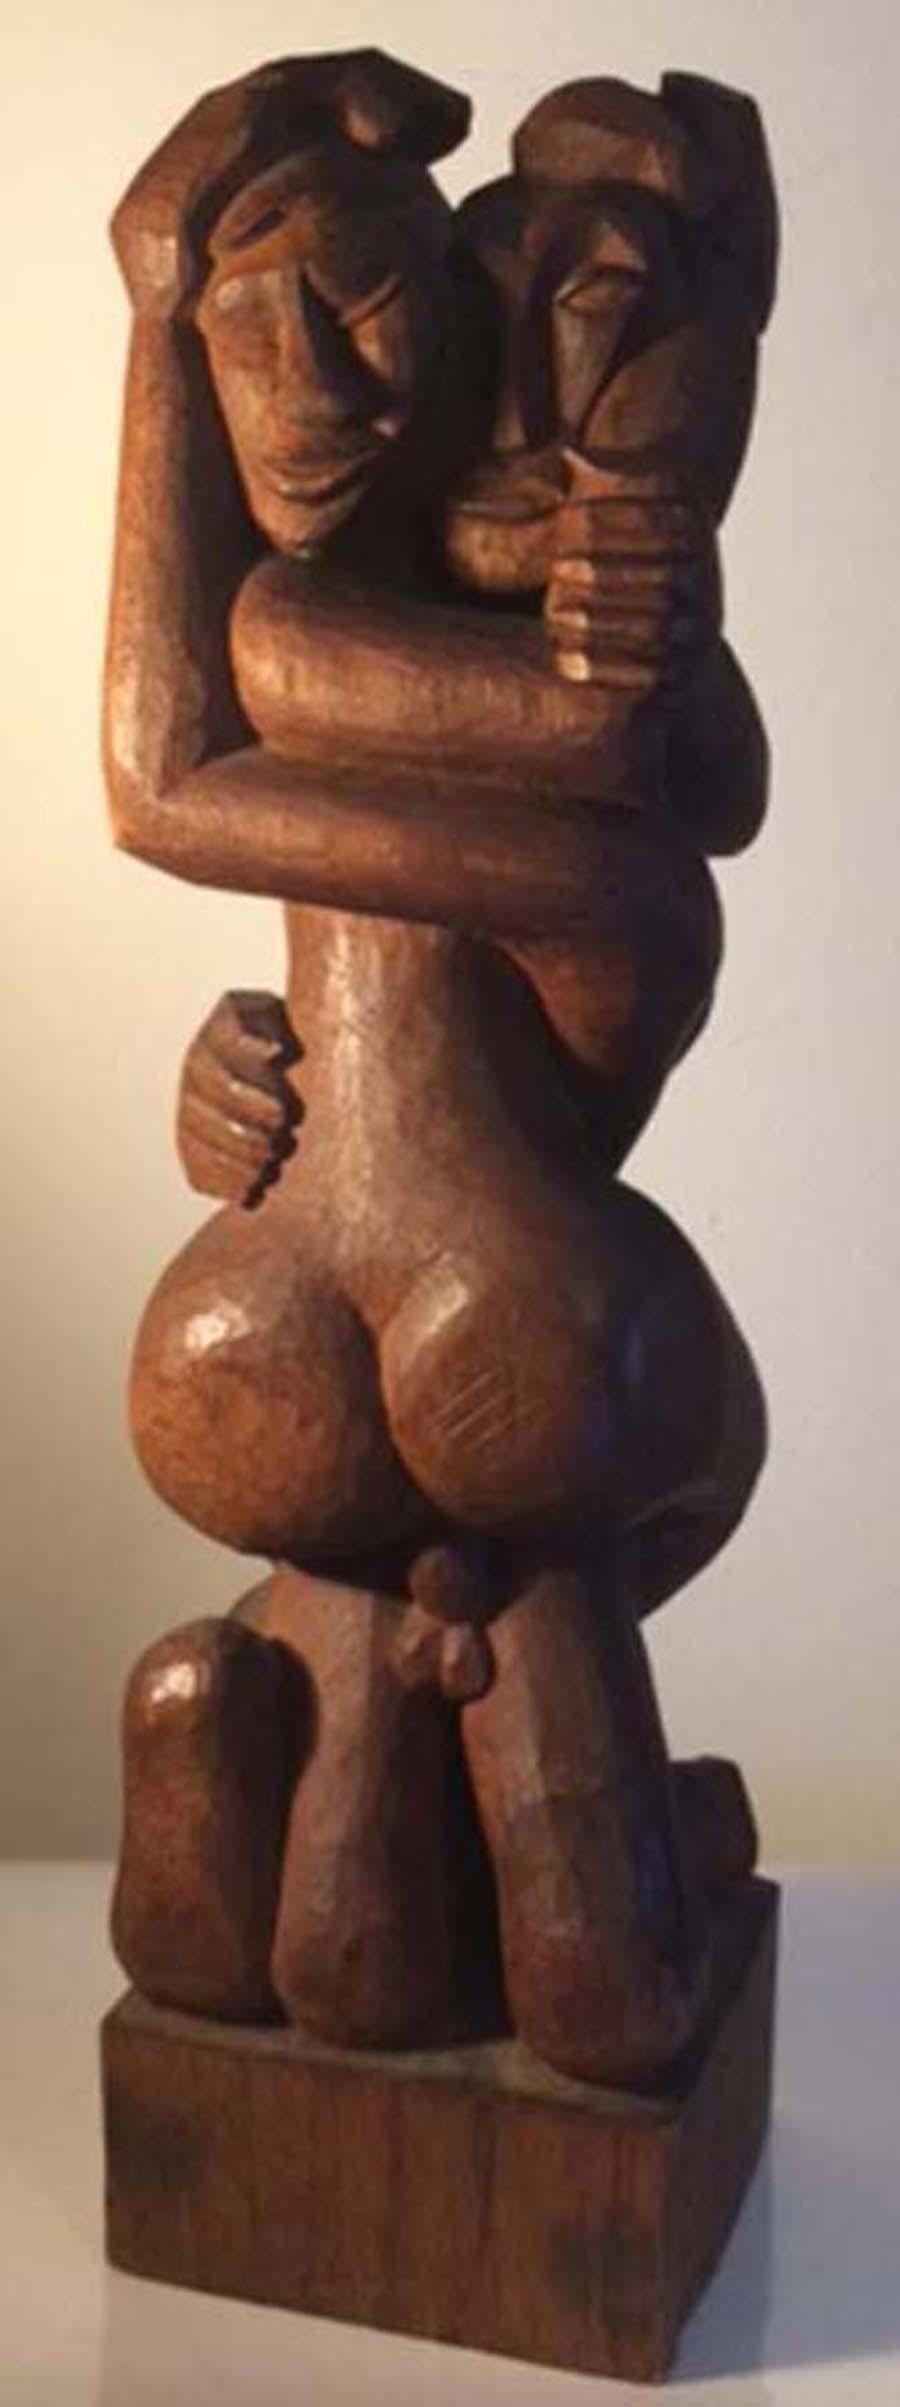   OSMAN "AJAX" JACKSON Nude Sculpture - Erotica